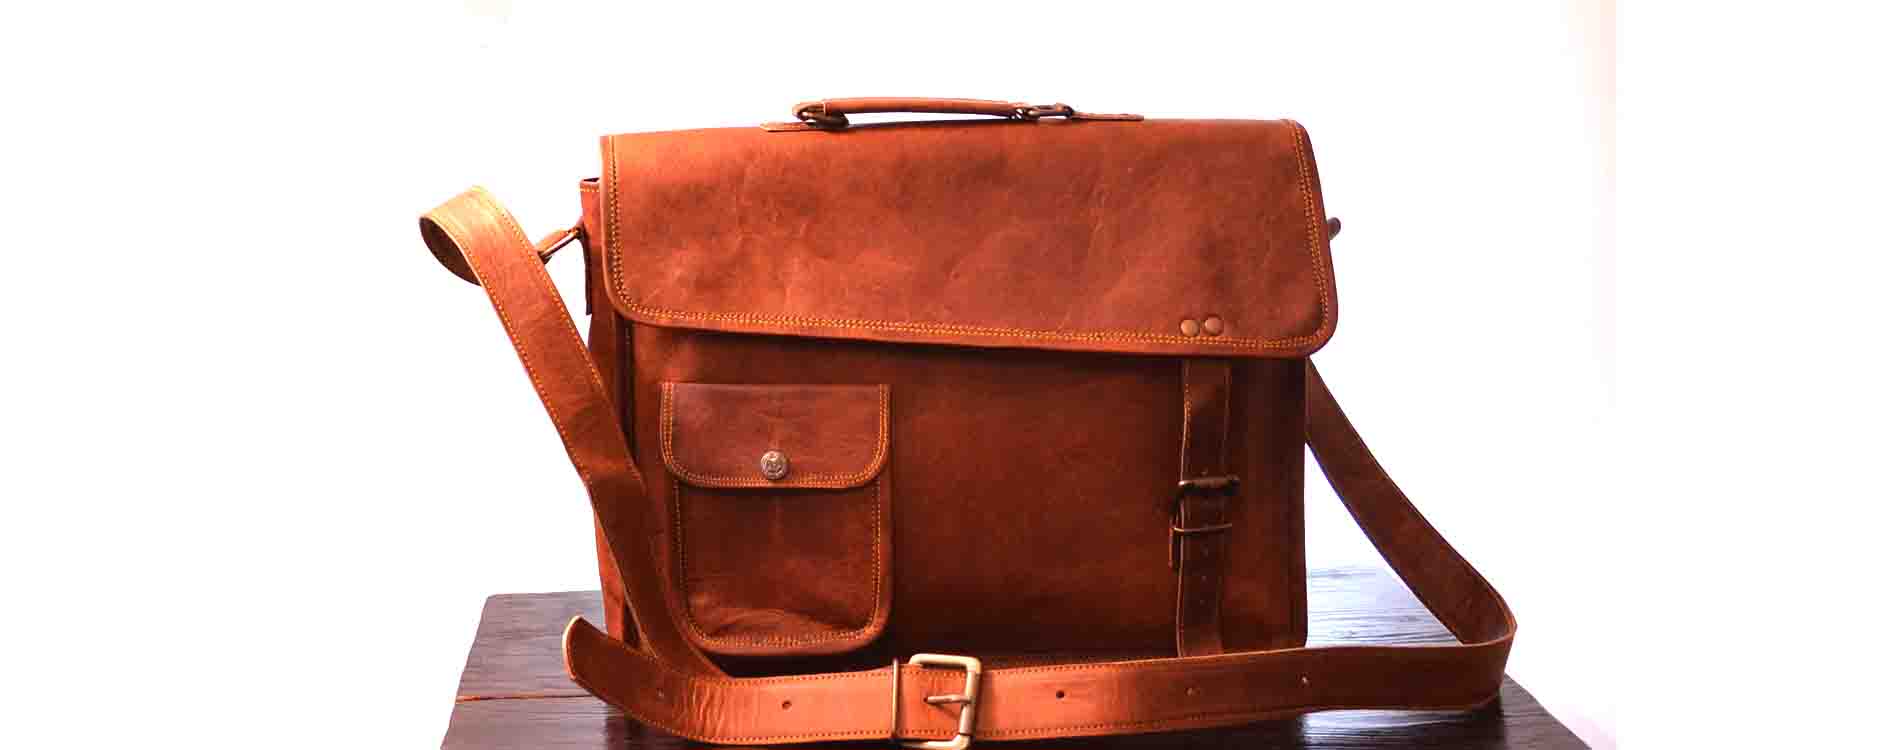 Rhinoland Genuine Leather Vintage Laptop Bag 15" Messenger Handmade Briefcase Satchel Bag Cross body Shoulder Bag